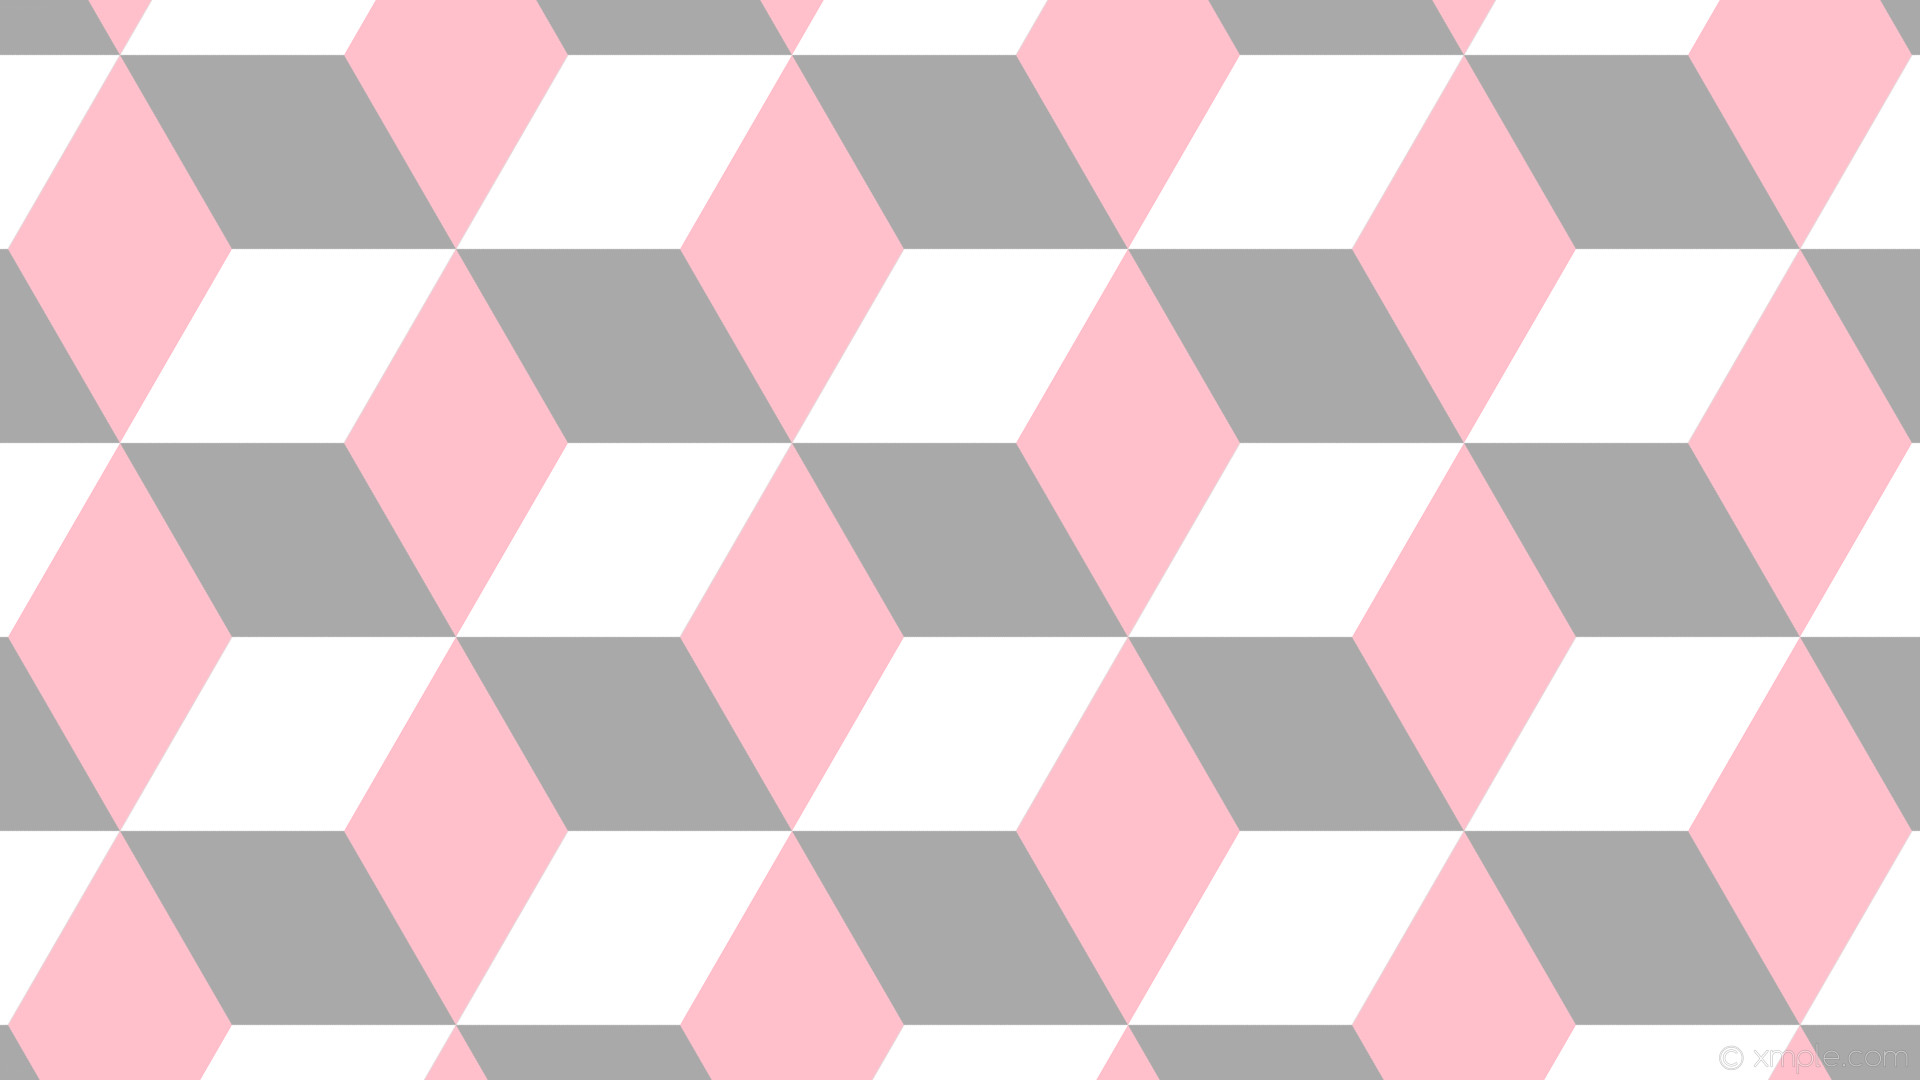 1920x1080 wallpaper pink 3d cubes white grey dark gray #a9a9a9 #ffc0cb #ffffff 150Â°